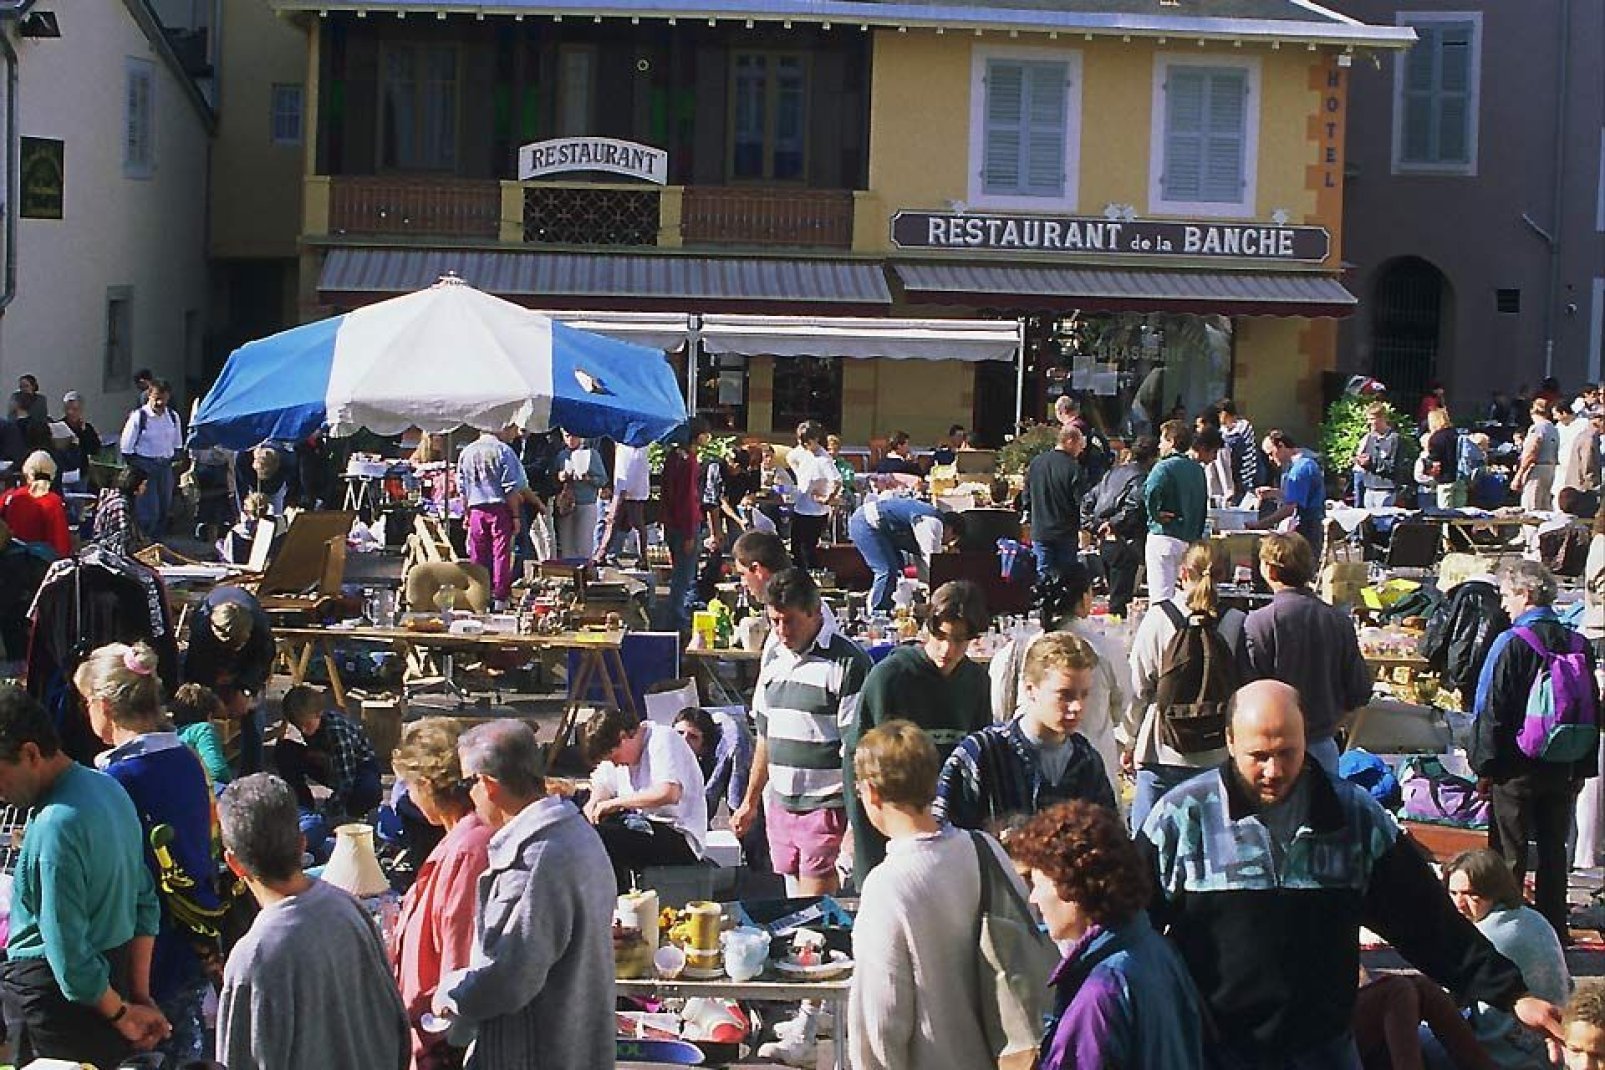 La città di Chambéry ospita numerose manifestazioni come i mercatini dell'usato, specie nel periodo estivo.